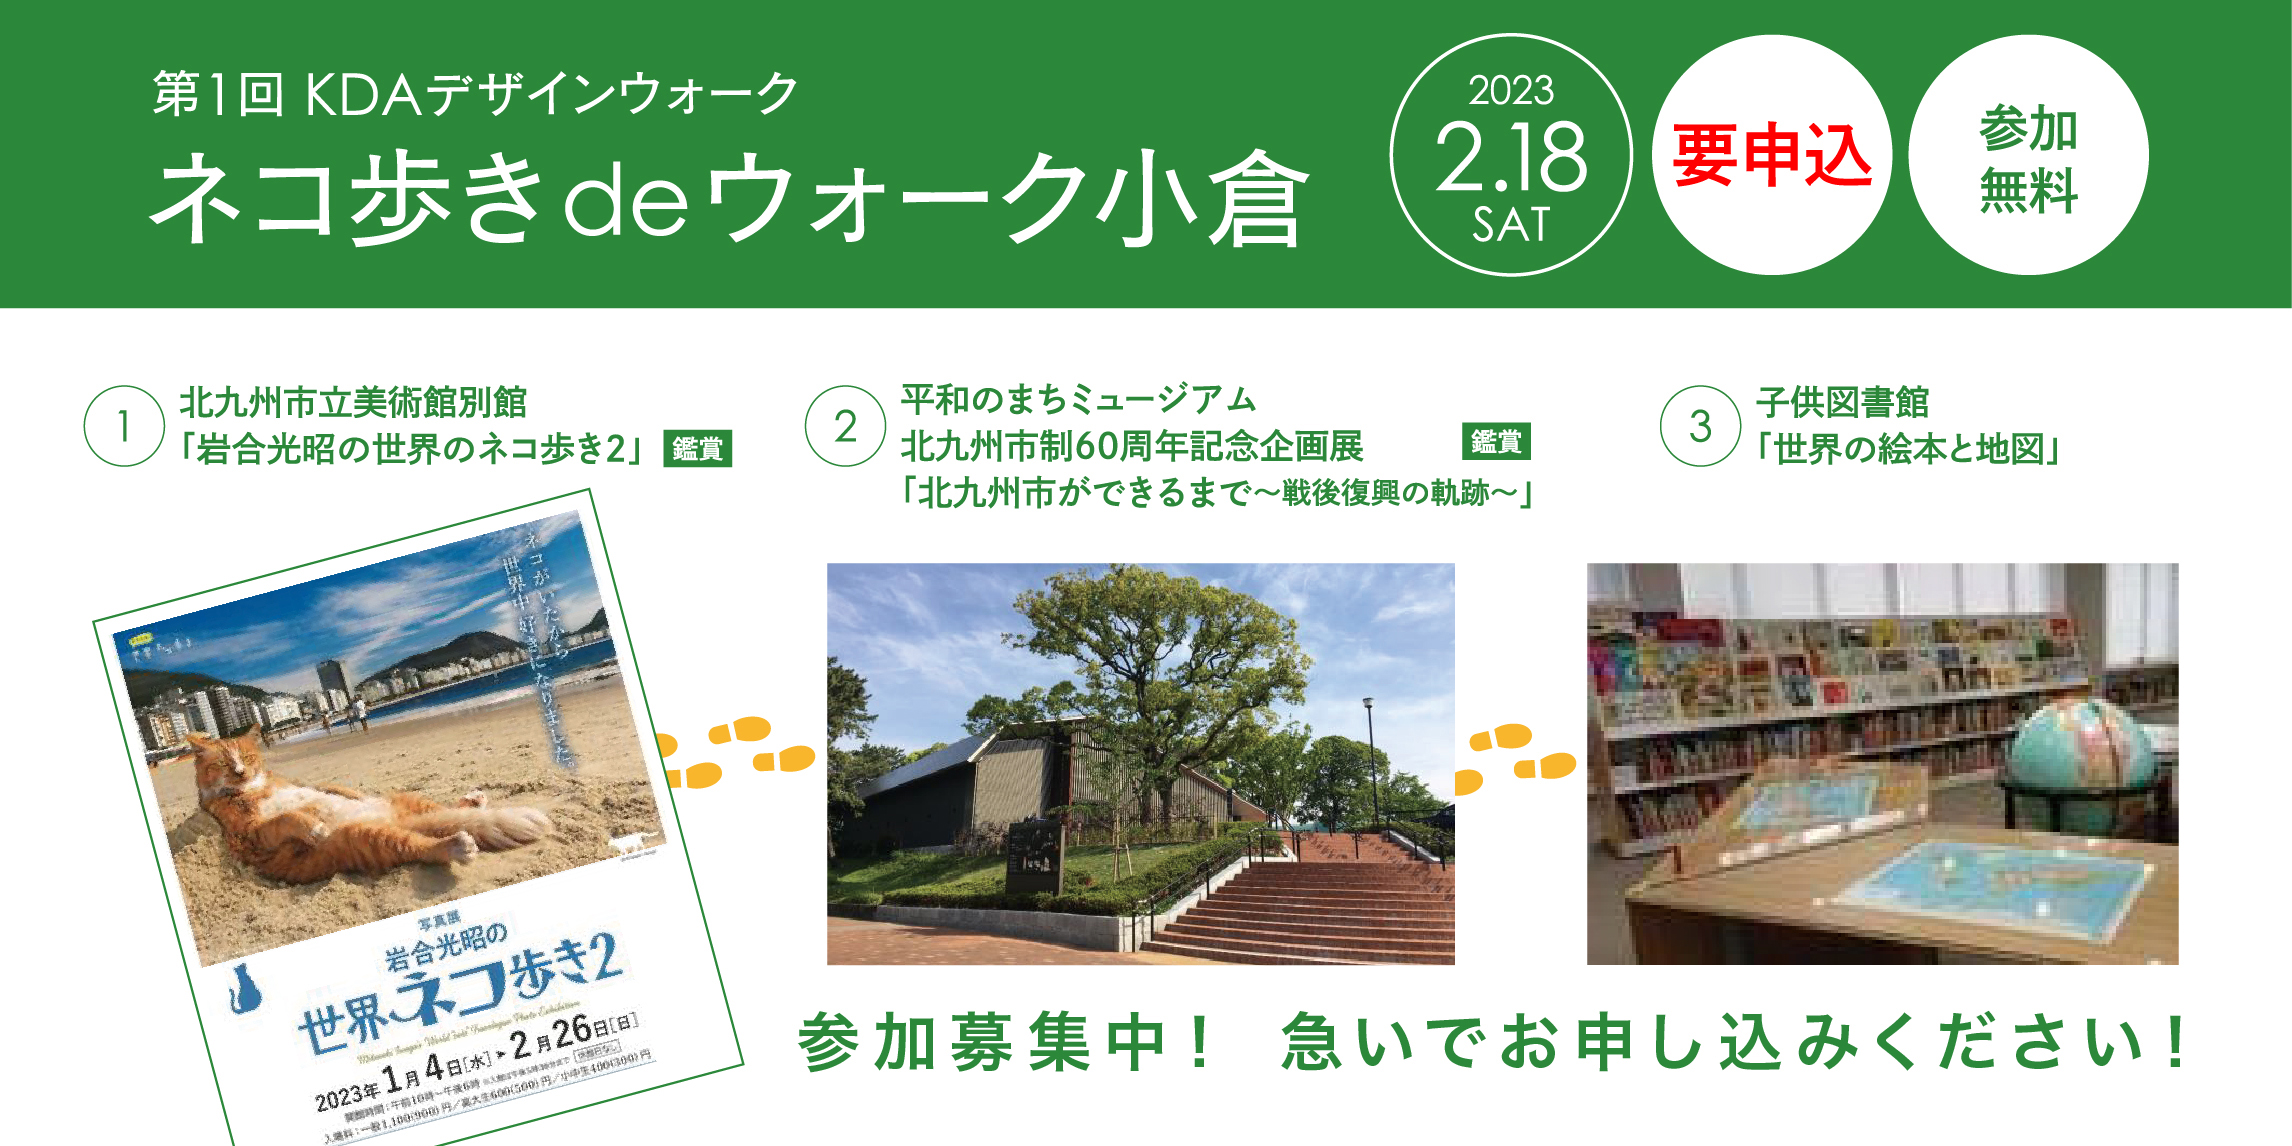 第1回 KDAデザインウォーク「ネコ歩きdeウォーク小倉」開催のお知らせ。